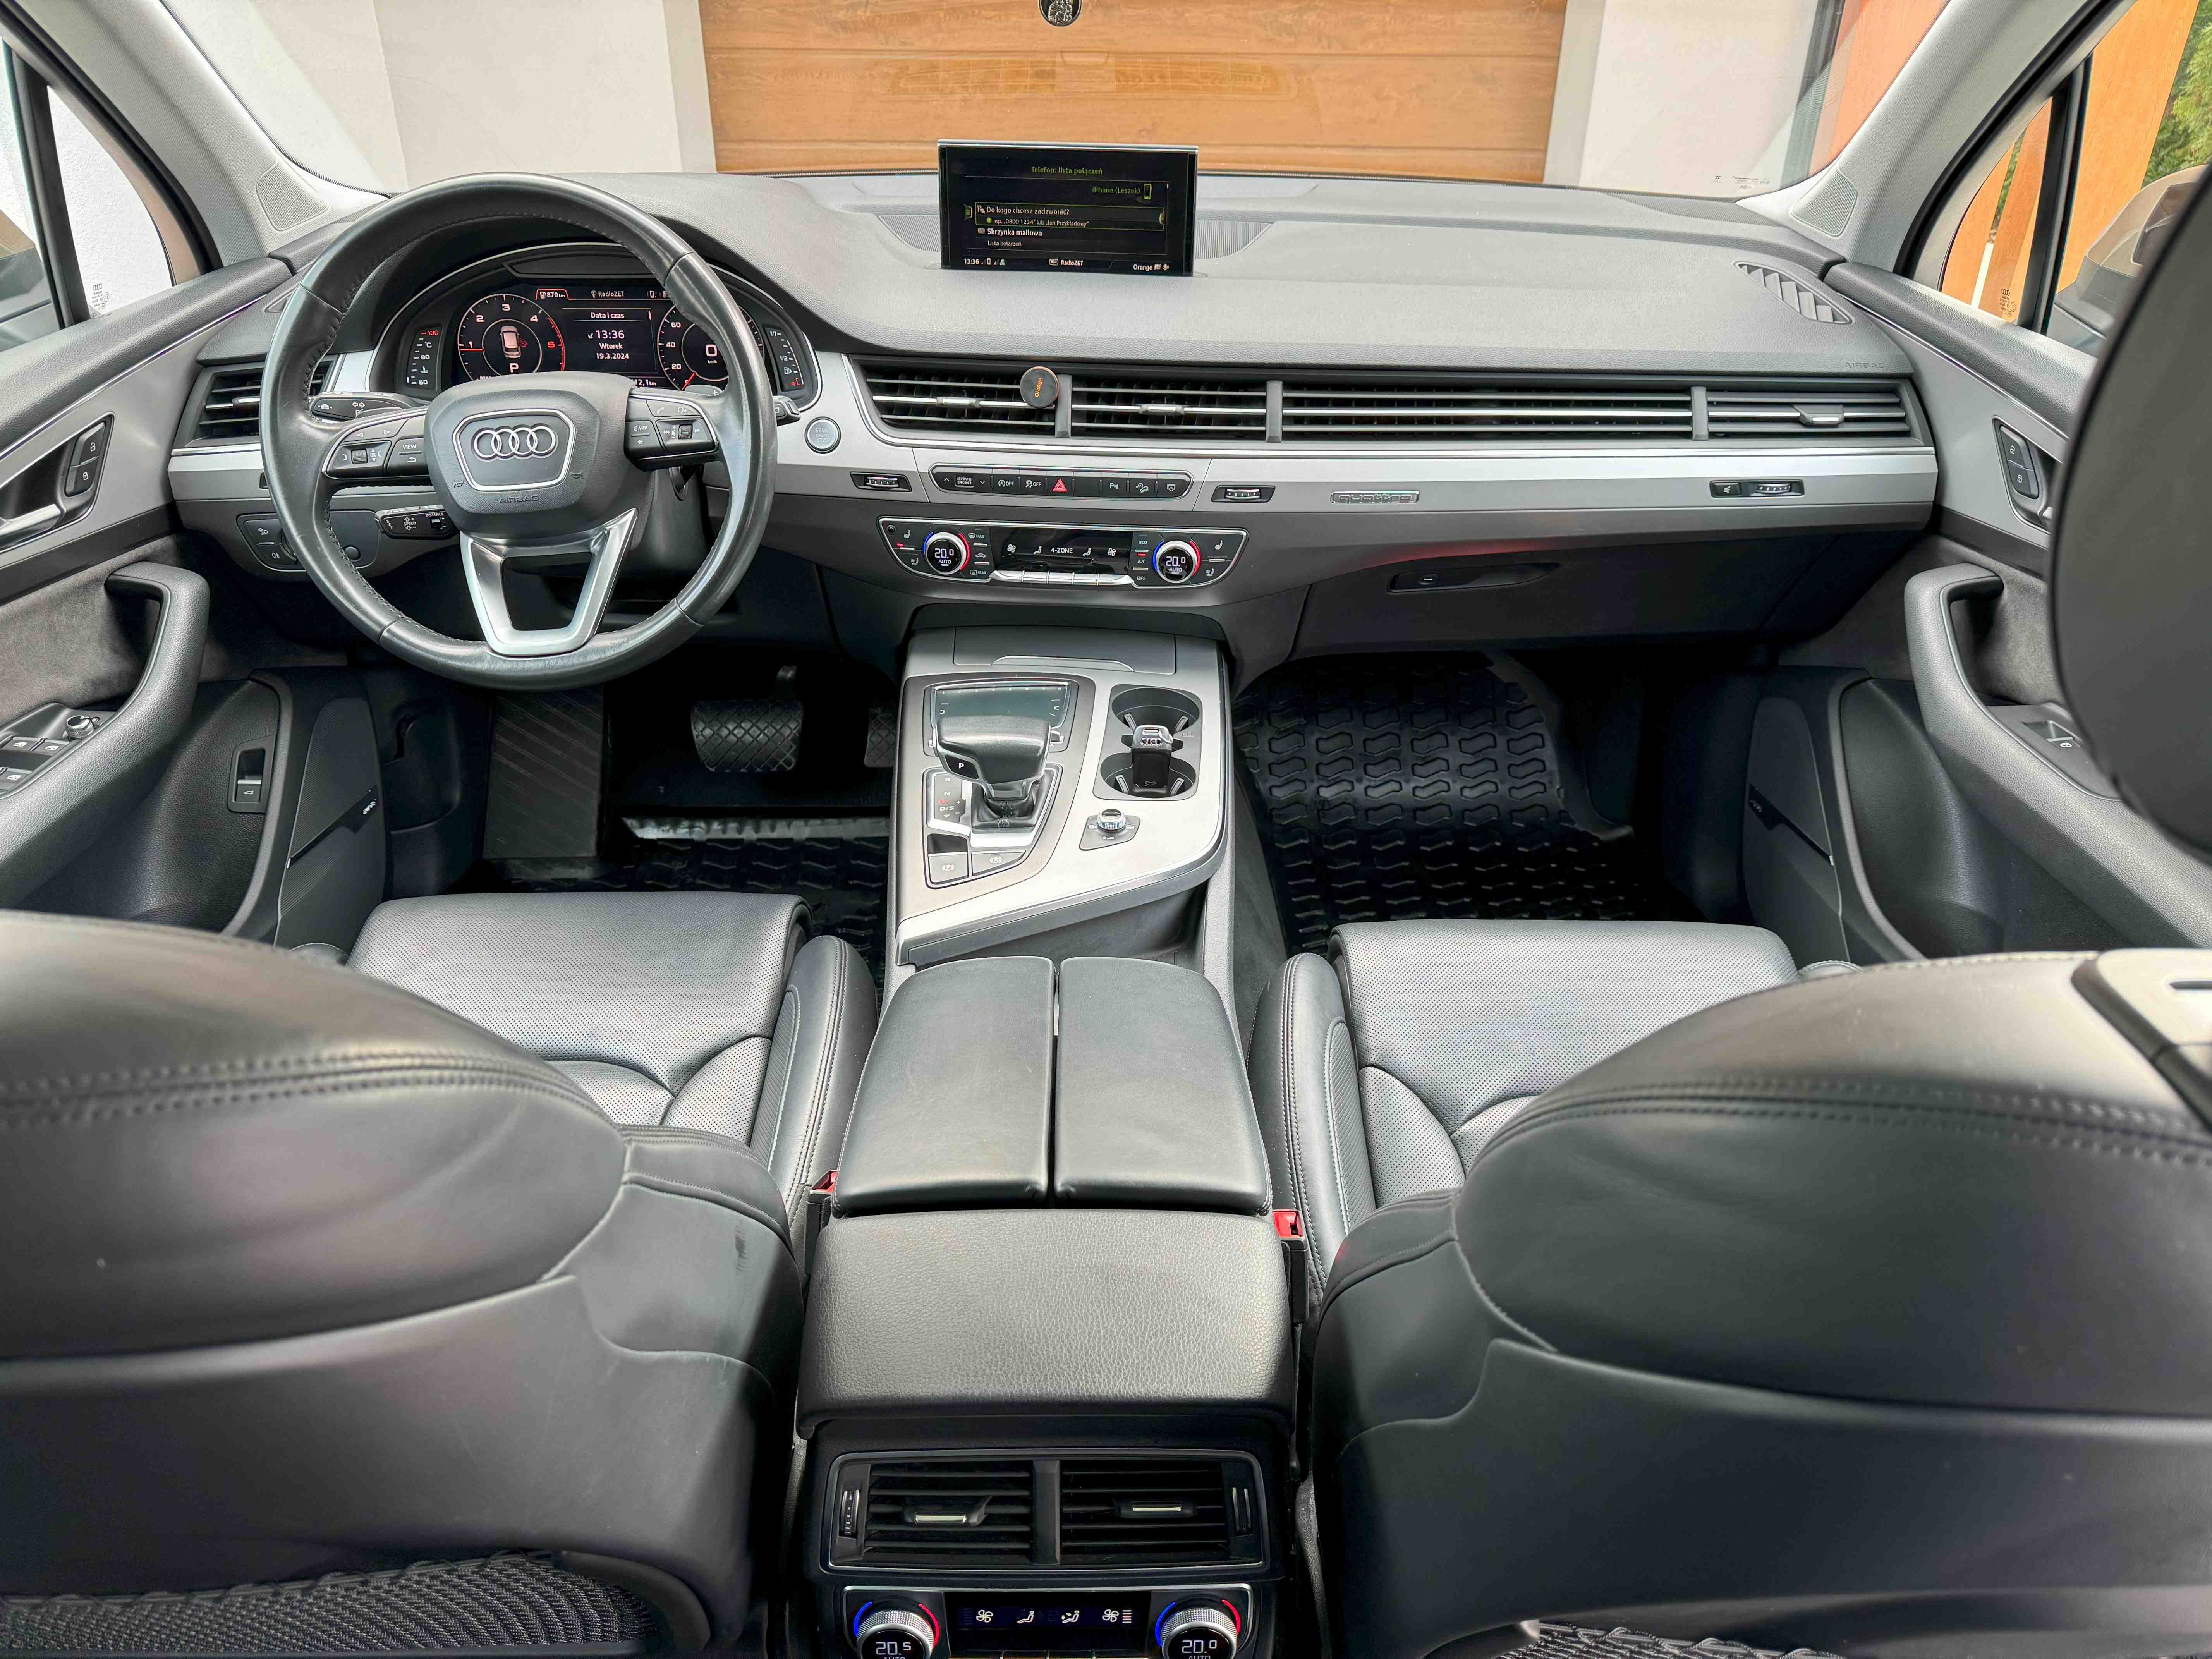 Audi Q7, 3.0 TDI, 272 KM, 12.2017, 1 wł. salon Polska, plus vat 23%